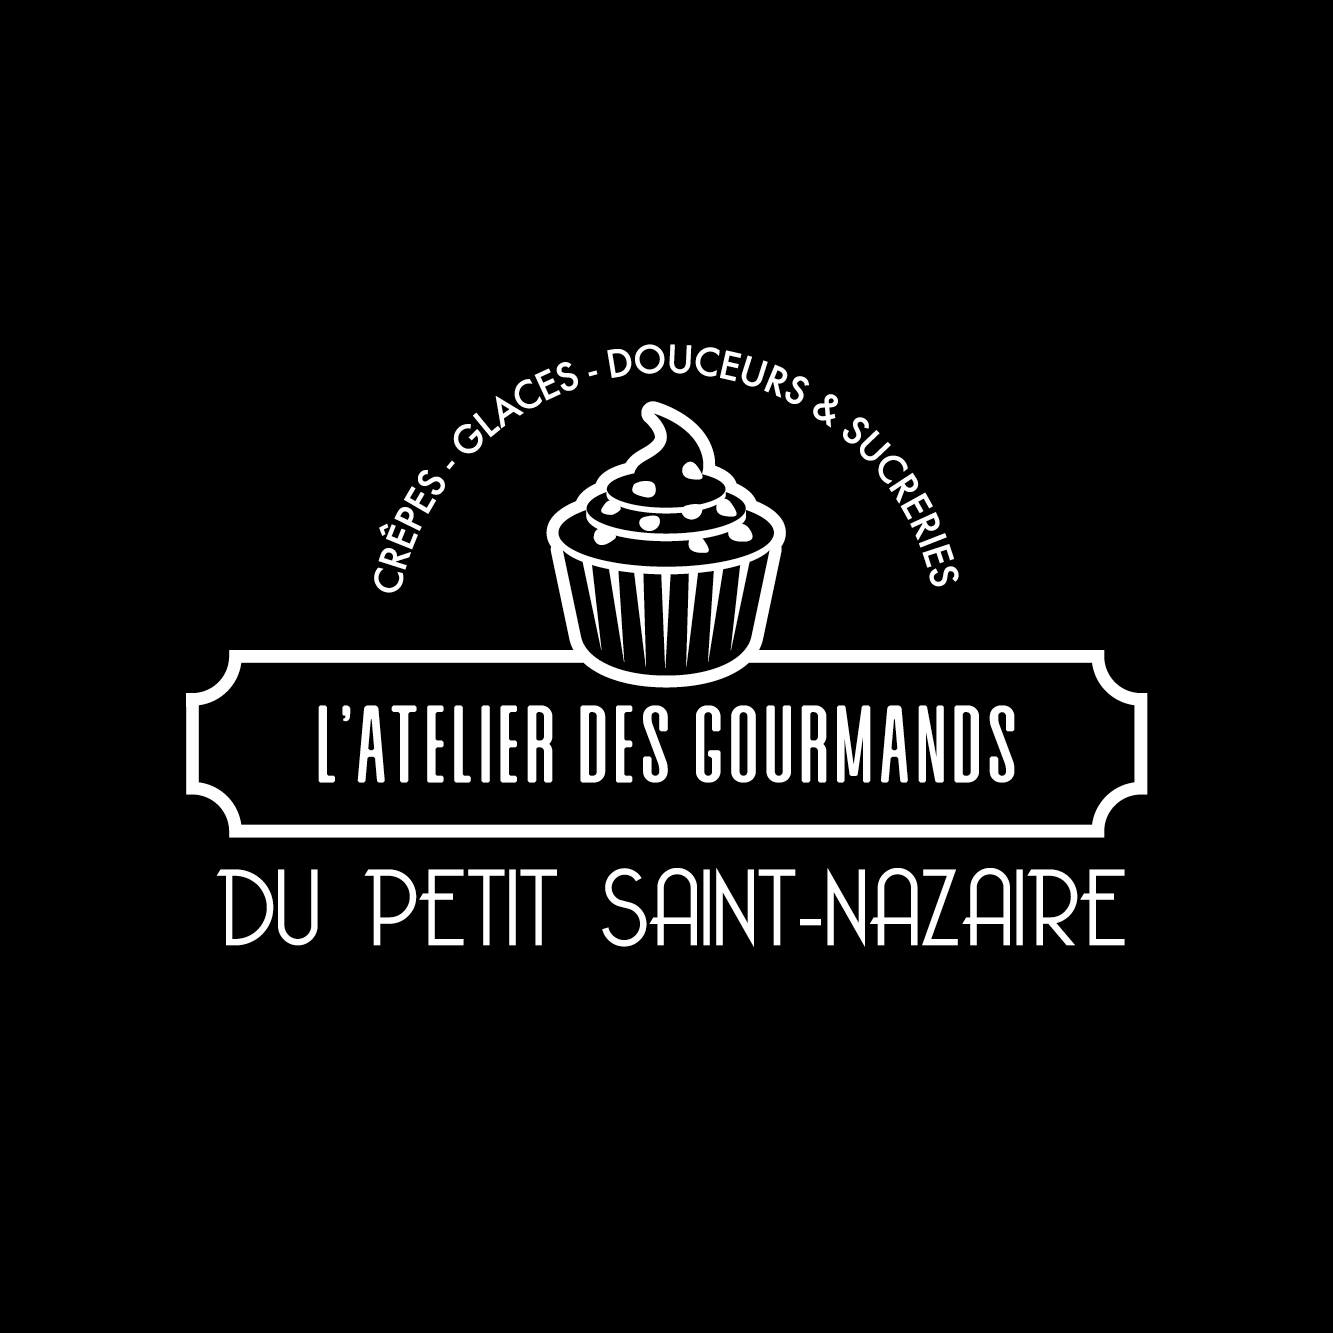 L'ATELIER GOURMAND DU PETIT SAINT-NAZAIRE